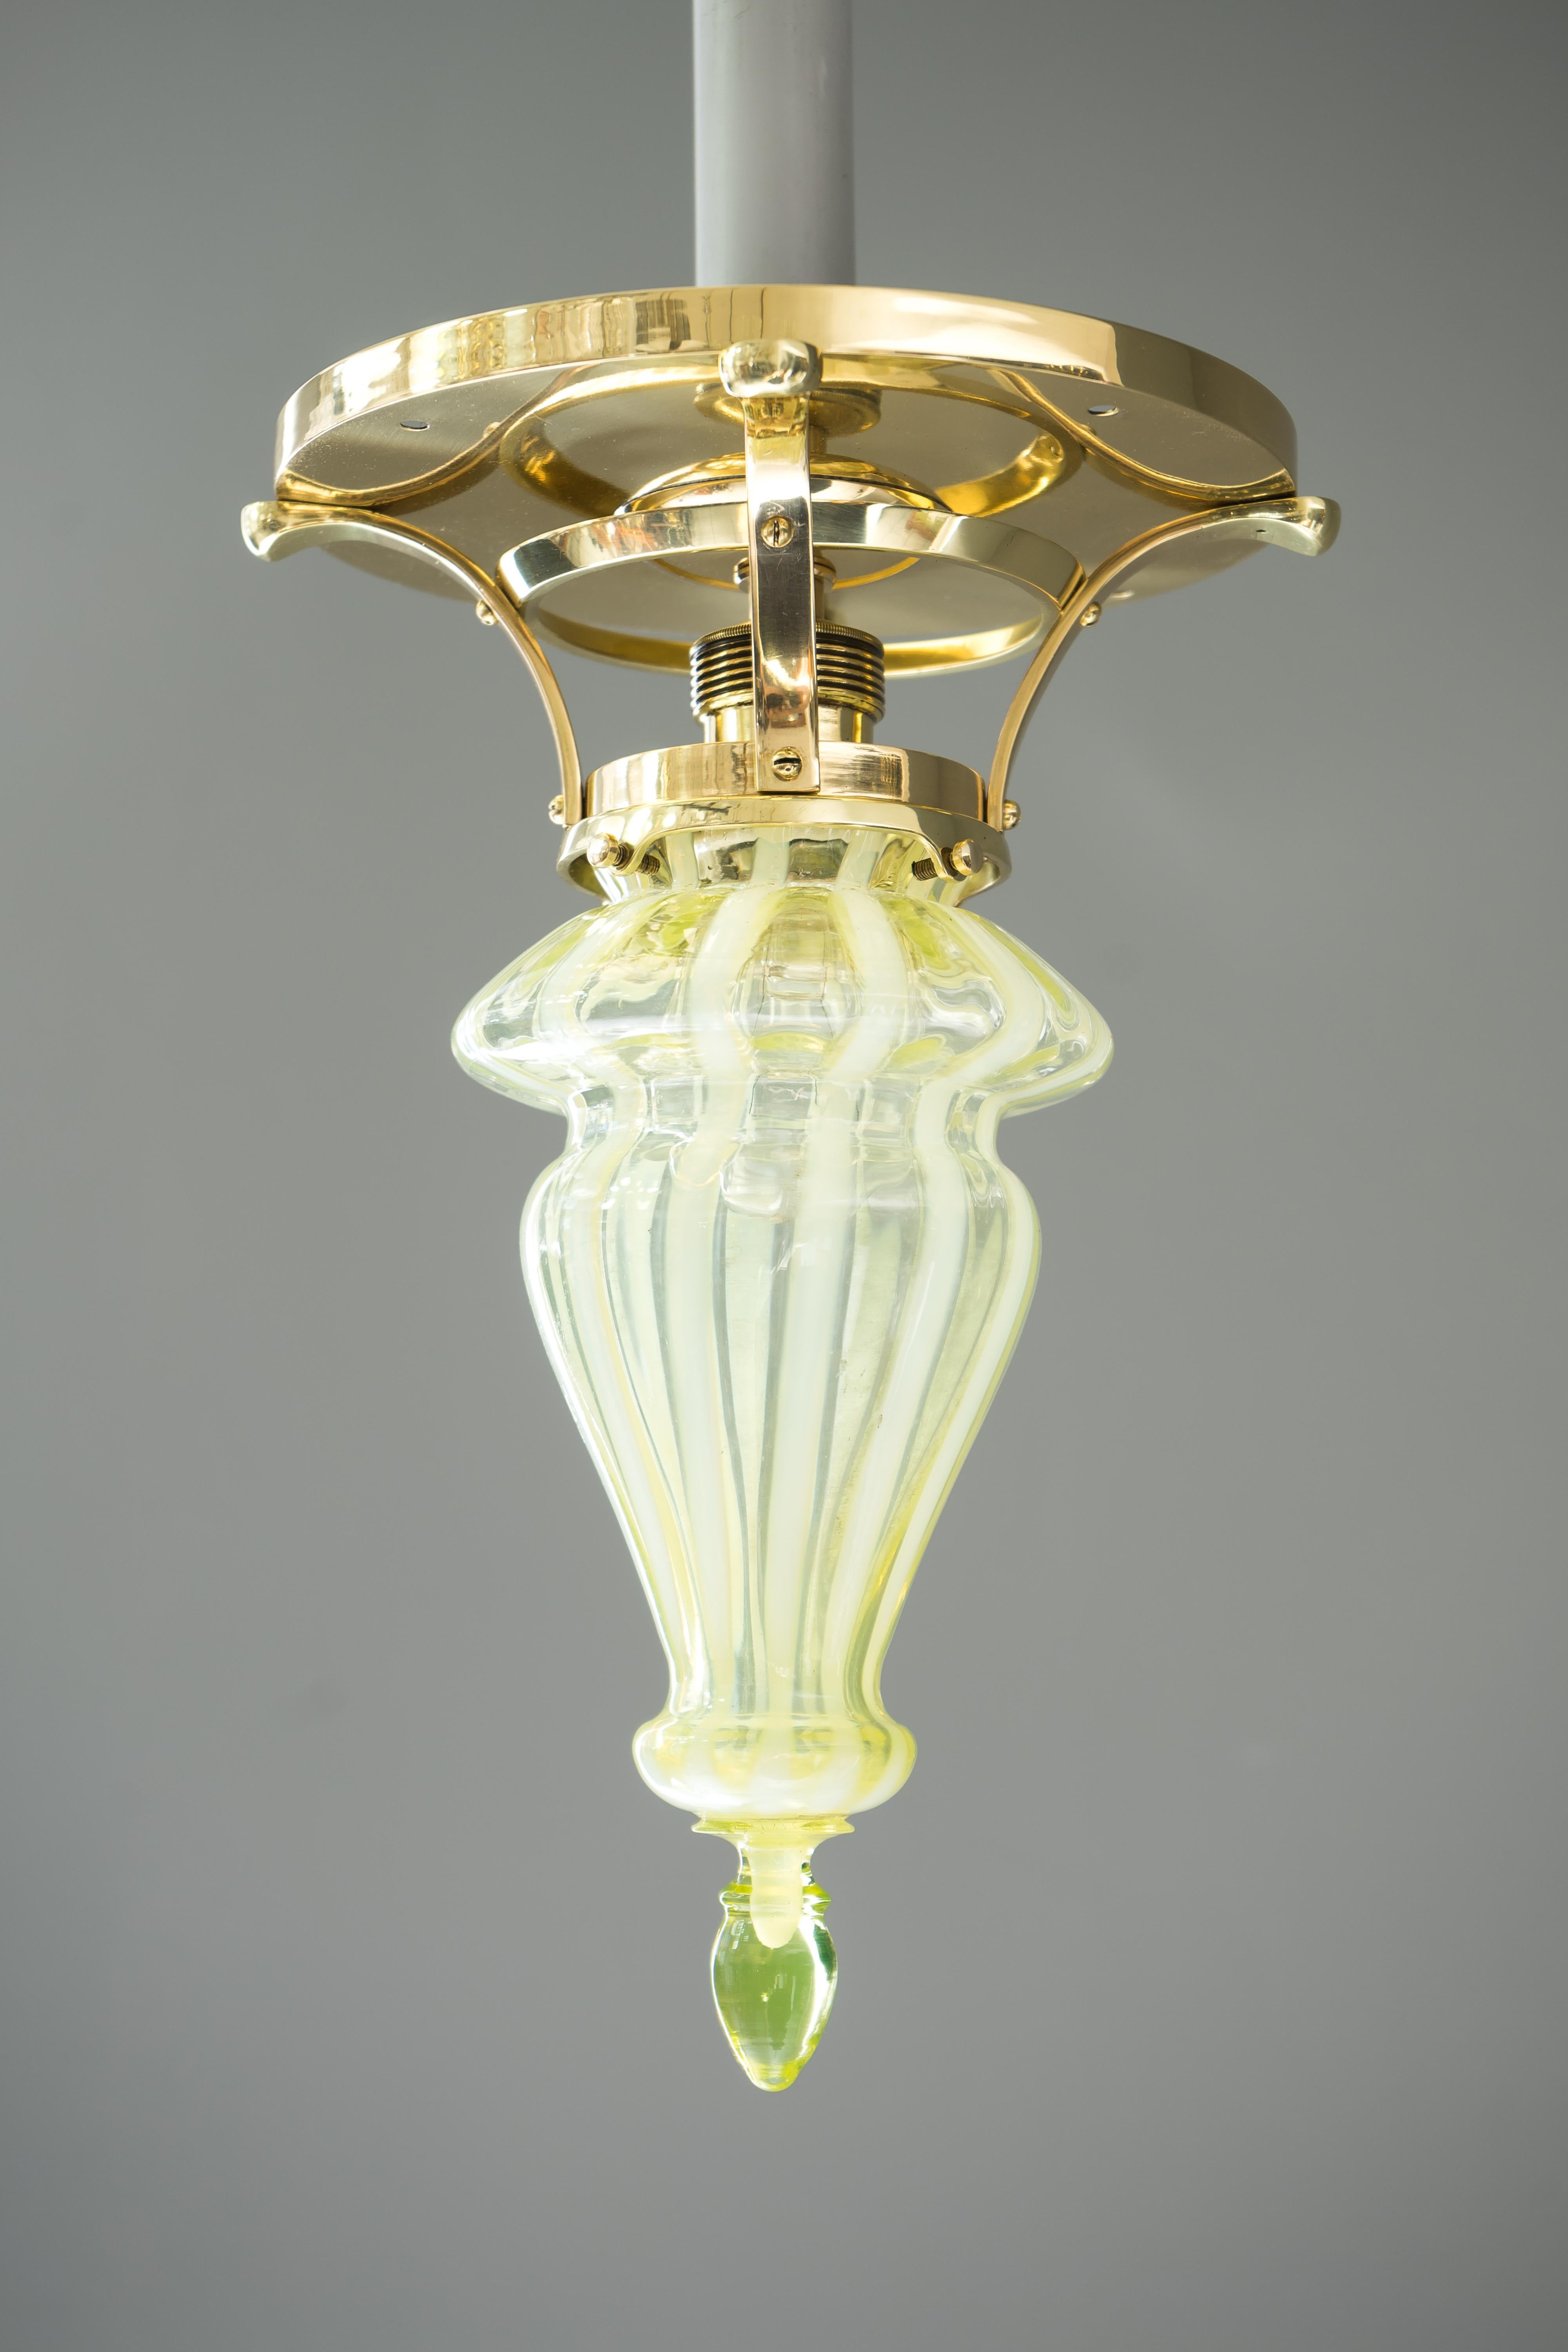 Art Deco Deckenlampe mit Opalglasschirm, um 1918.
Poliert und einbrennlackiert.